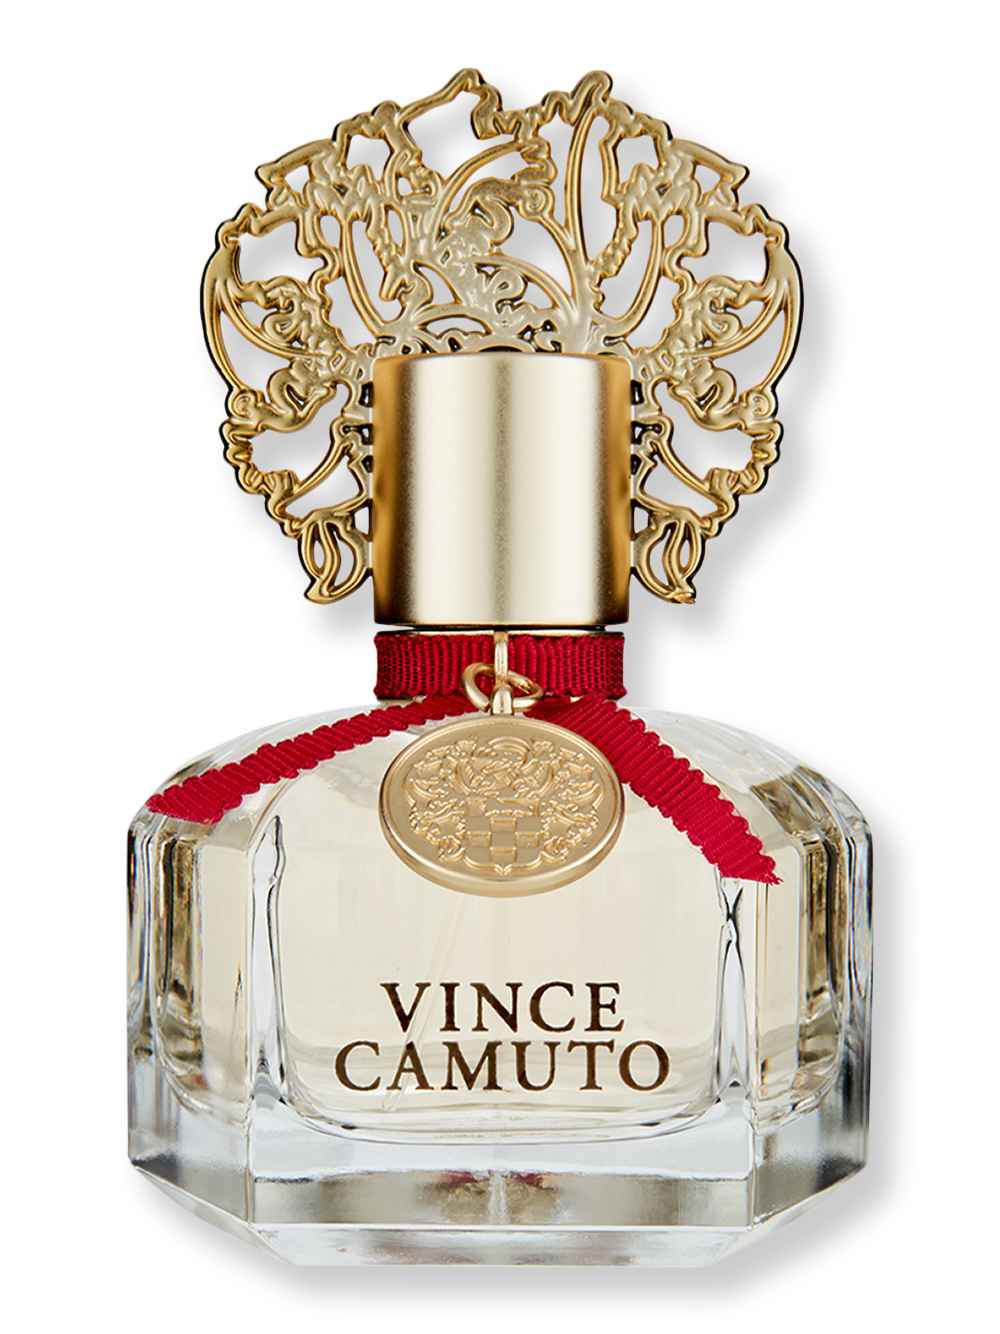 Vince Camuto Vince Camuto Eau De Parfum Spray For Women 1.7 oz Perfumes & Colognes 